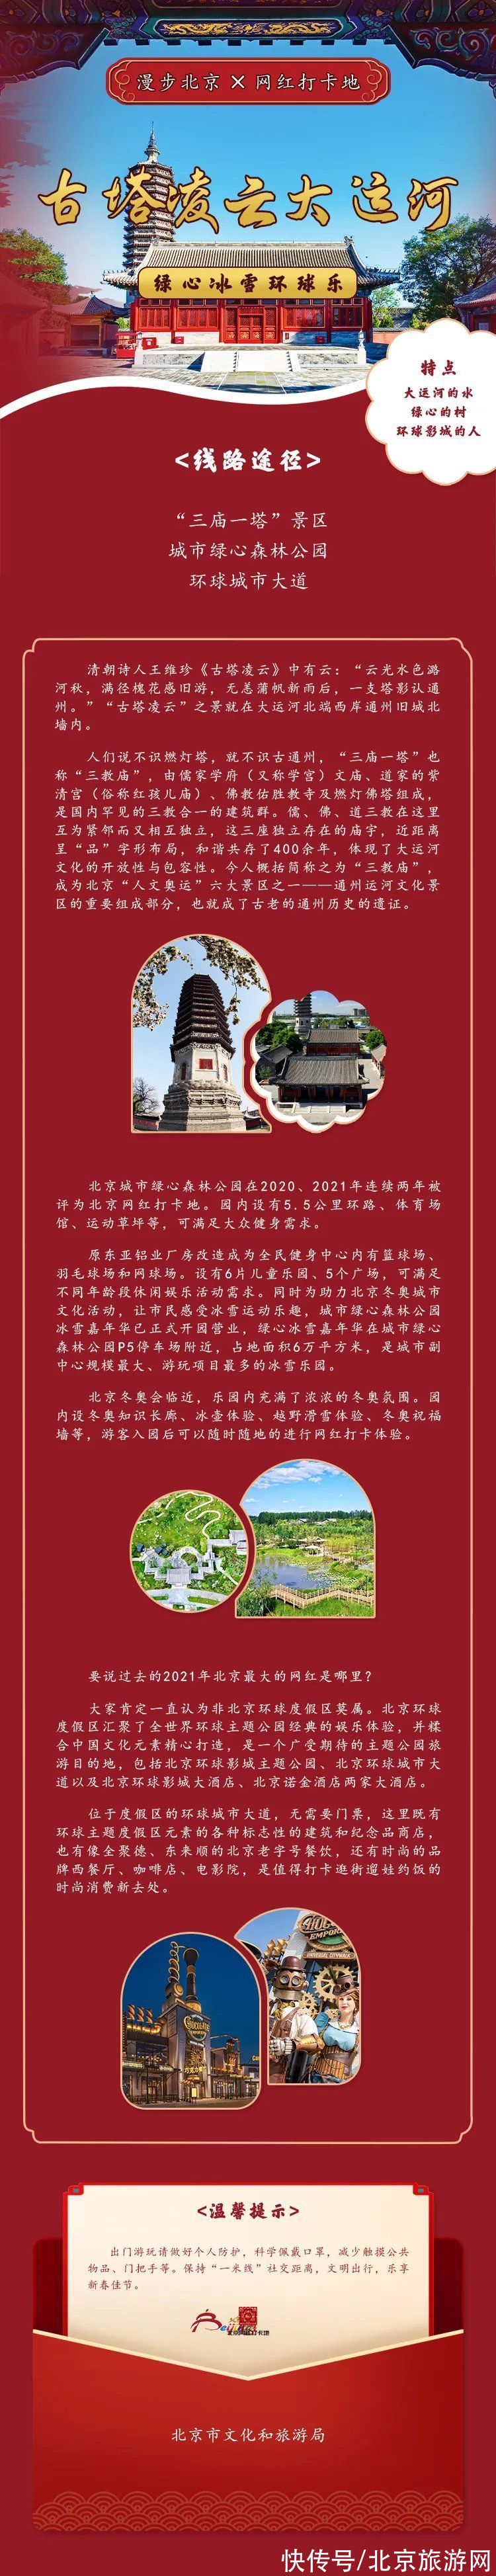 北京市文化和旅游局|北京市文化和旅游局发布的10条潮玩旅游线路长啥样？一图看遍！